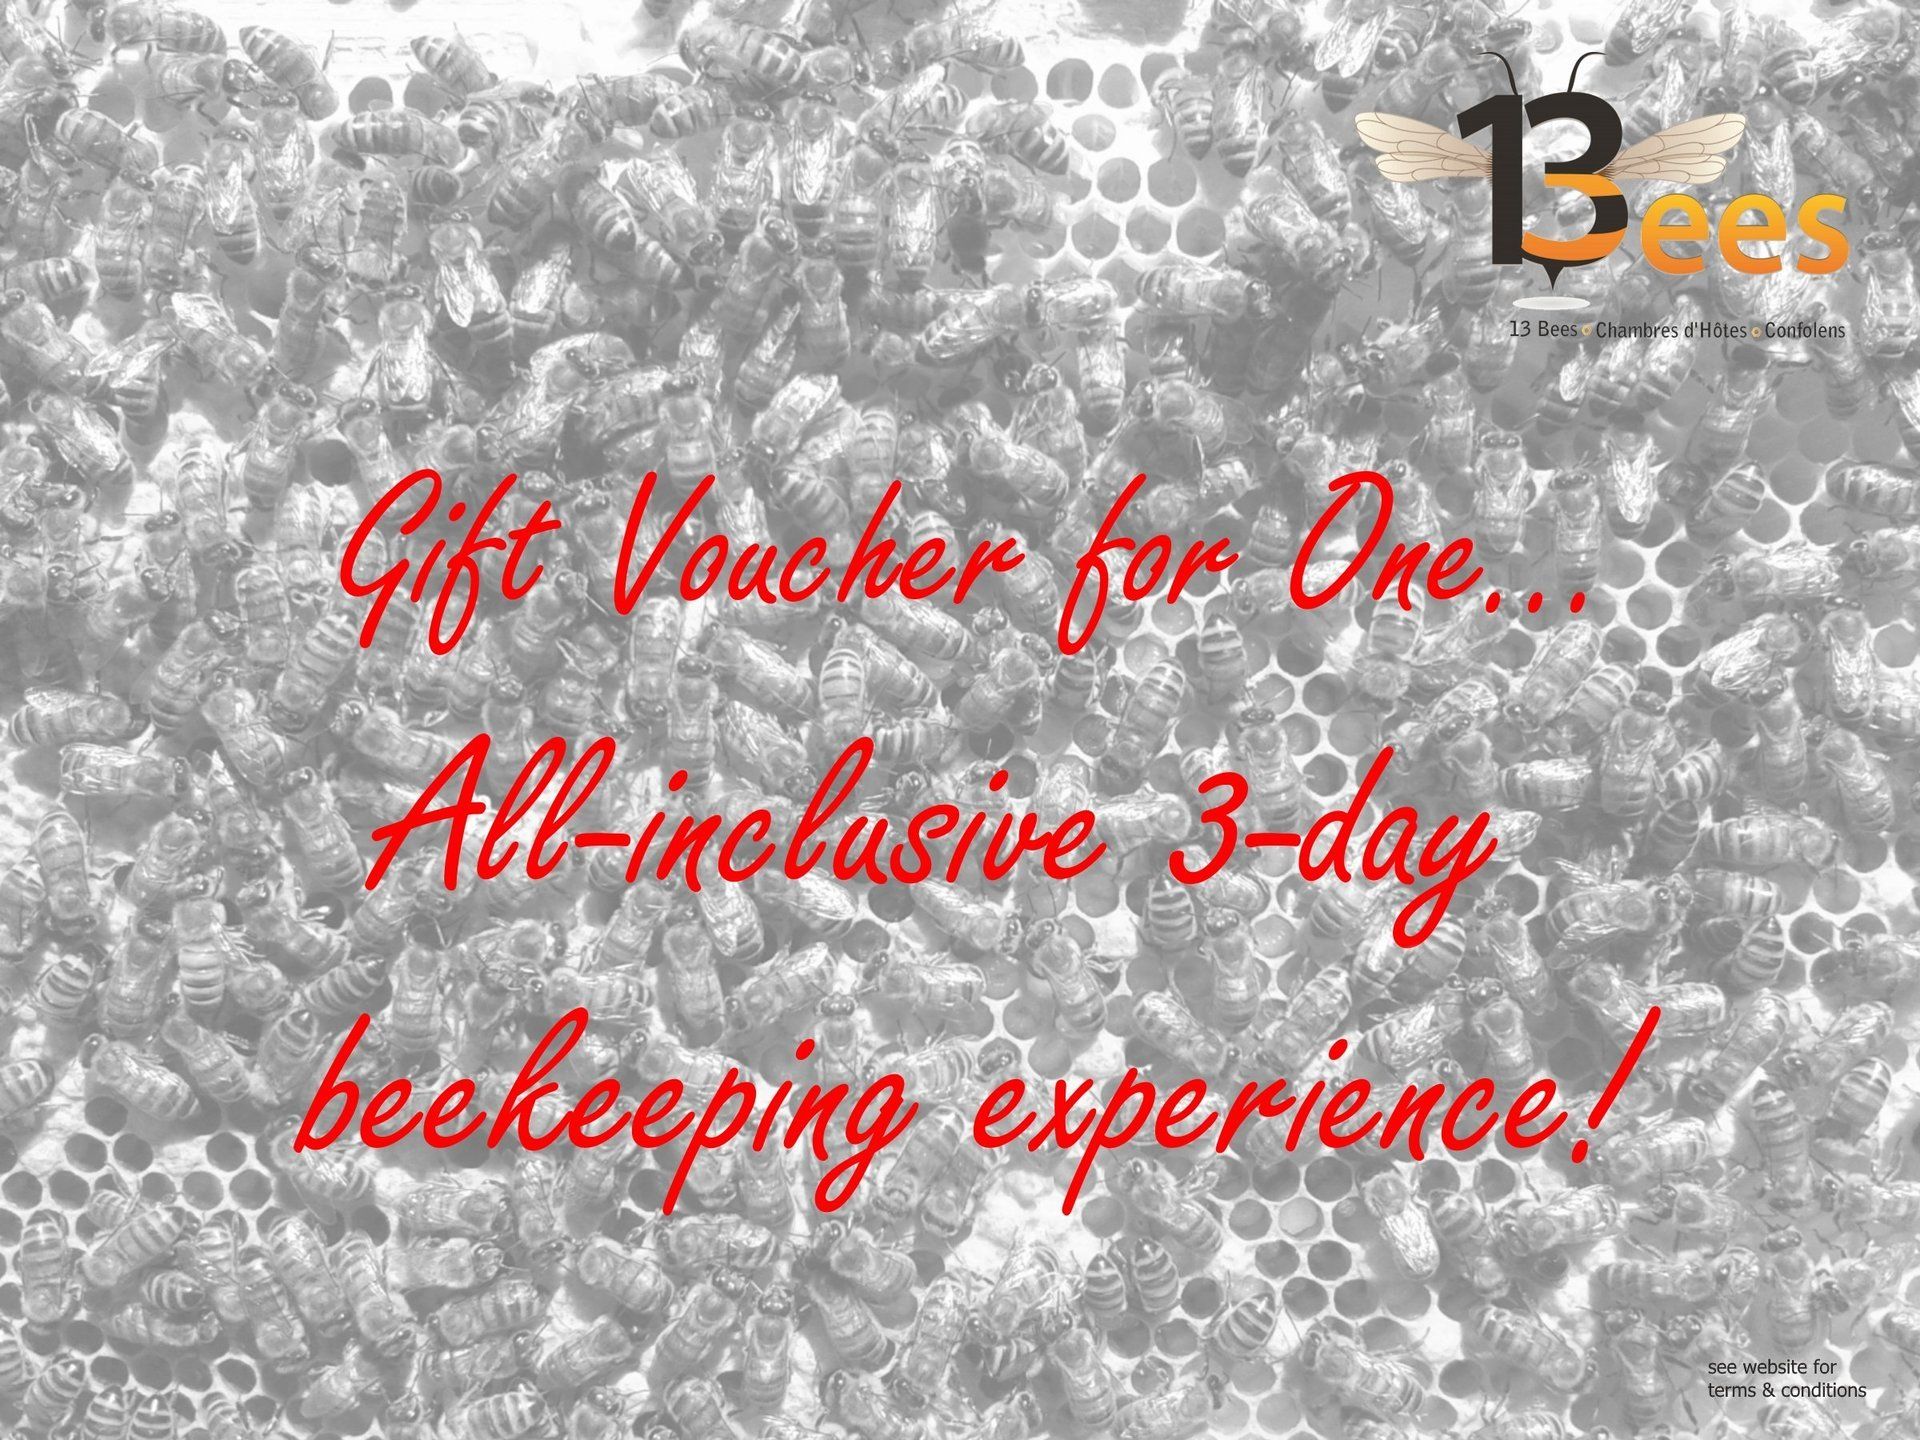 3-day beekeeping break gift voucher